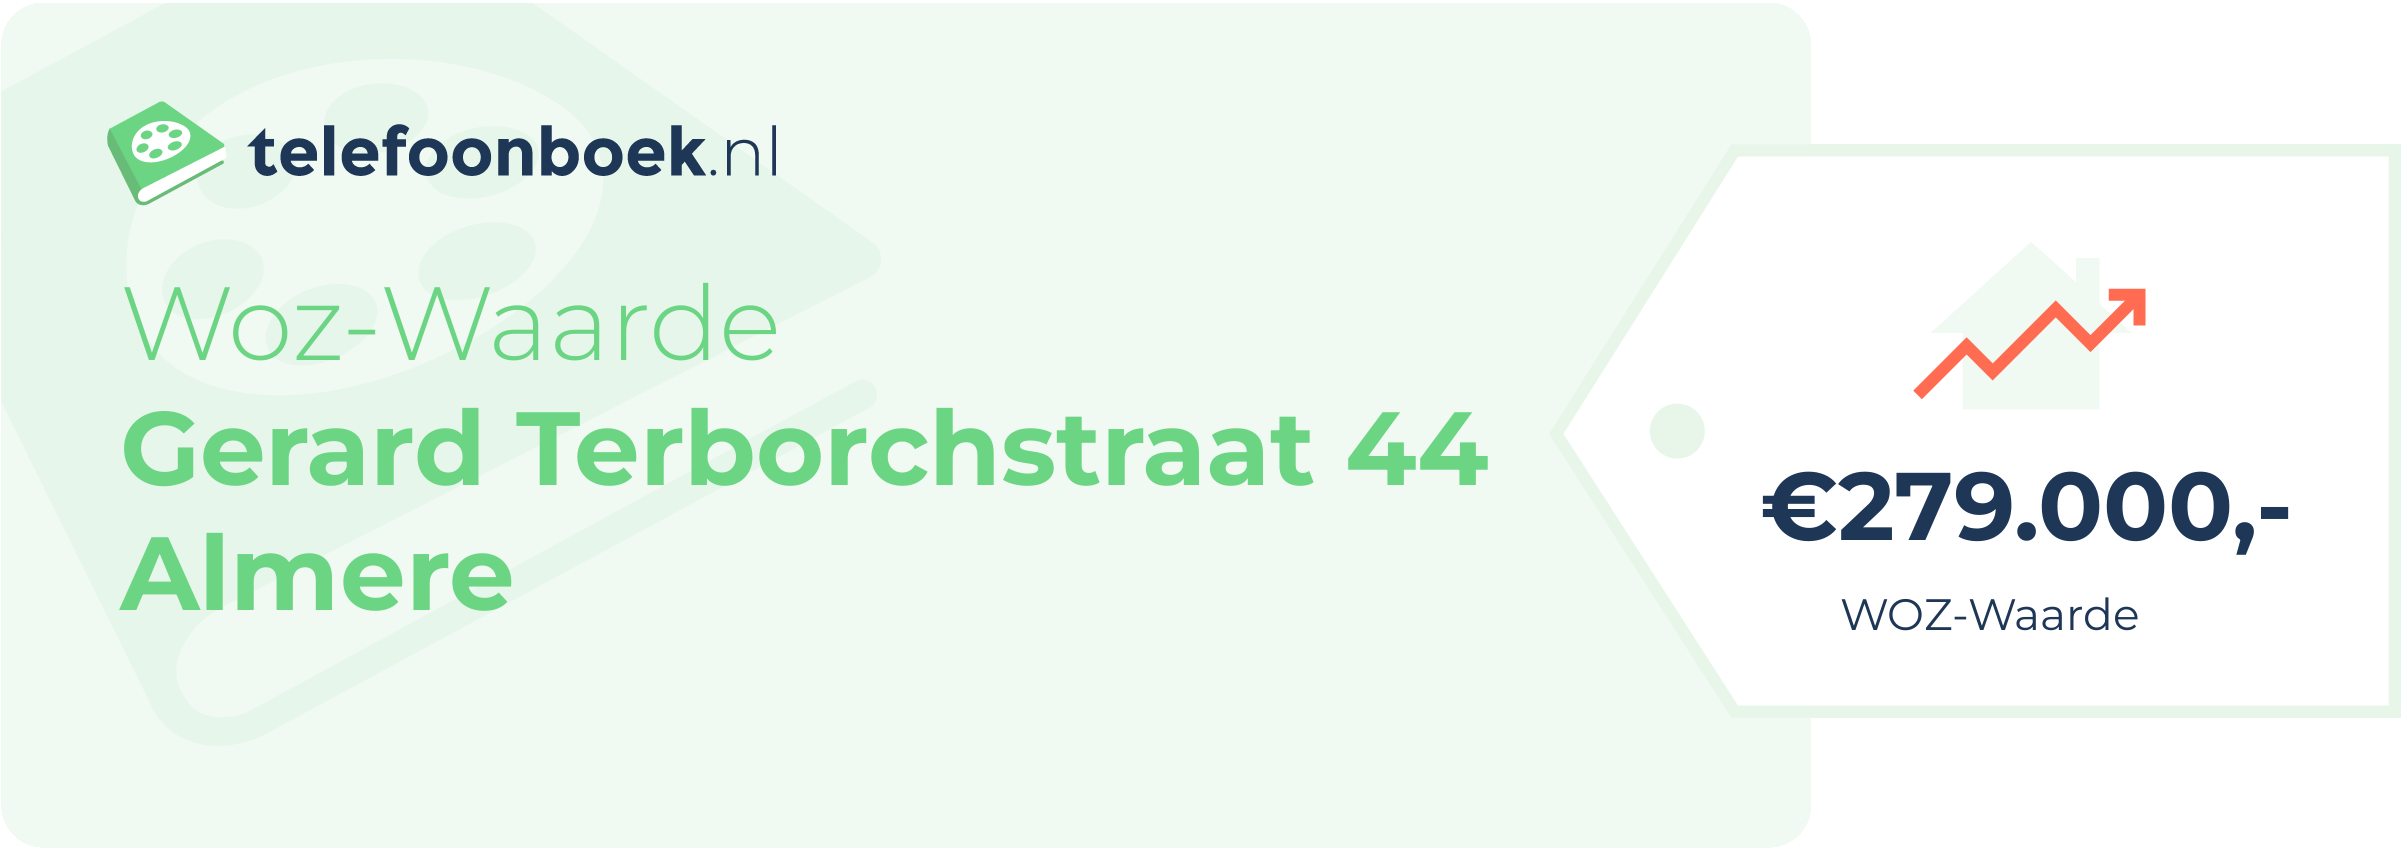 WOZ-waarde Gerard Terborchstraat 44 Almere